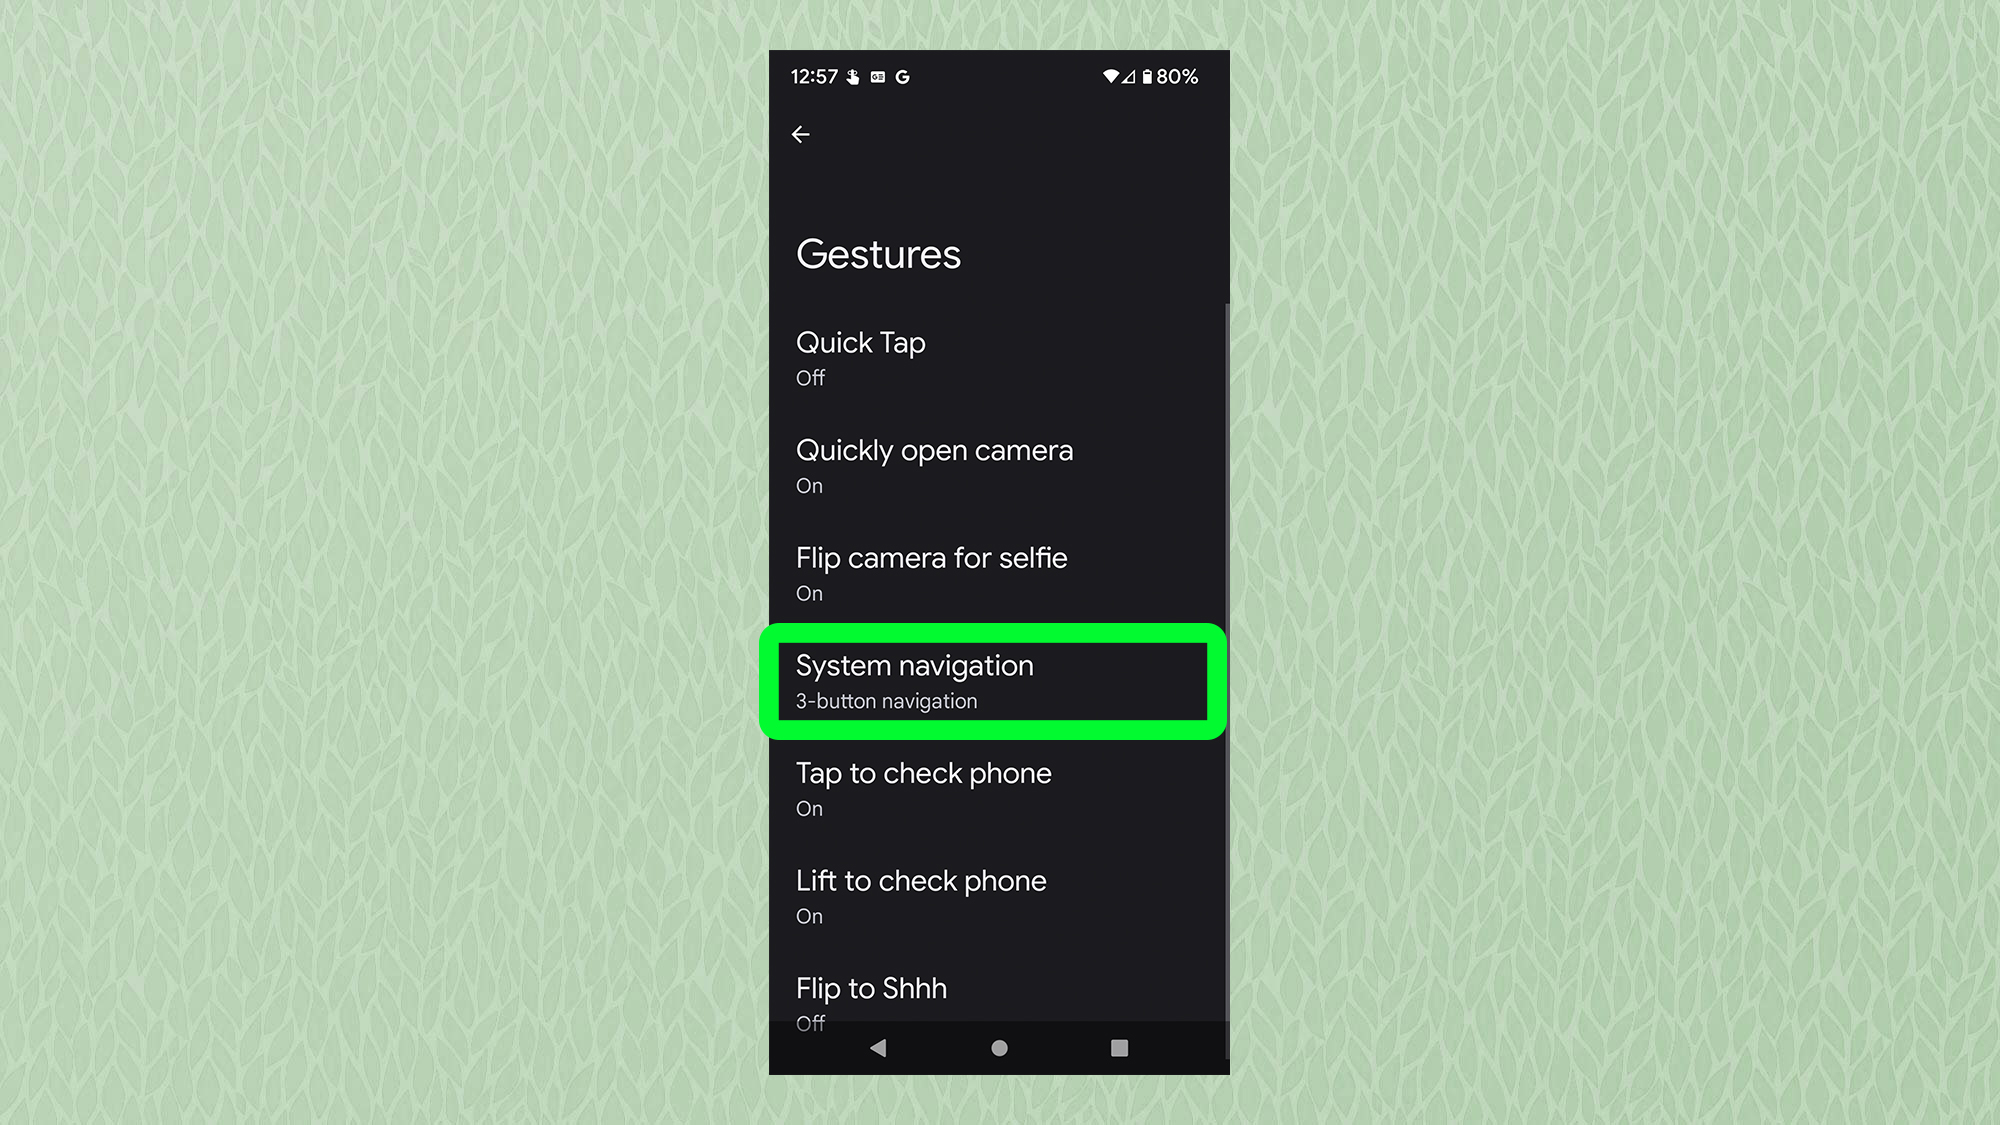 Снимок экрана с Android, показывающий меню жестов с выделенной «Системной навигацией».